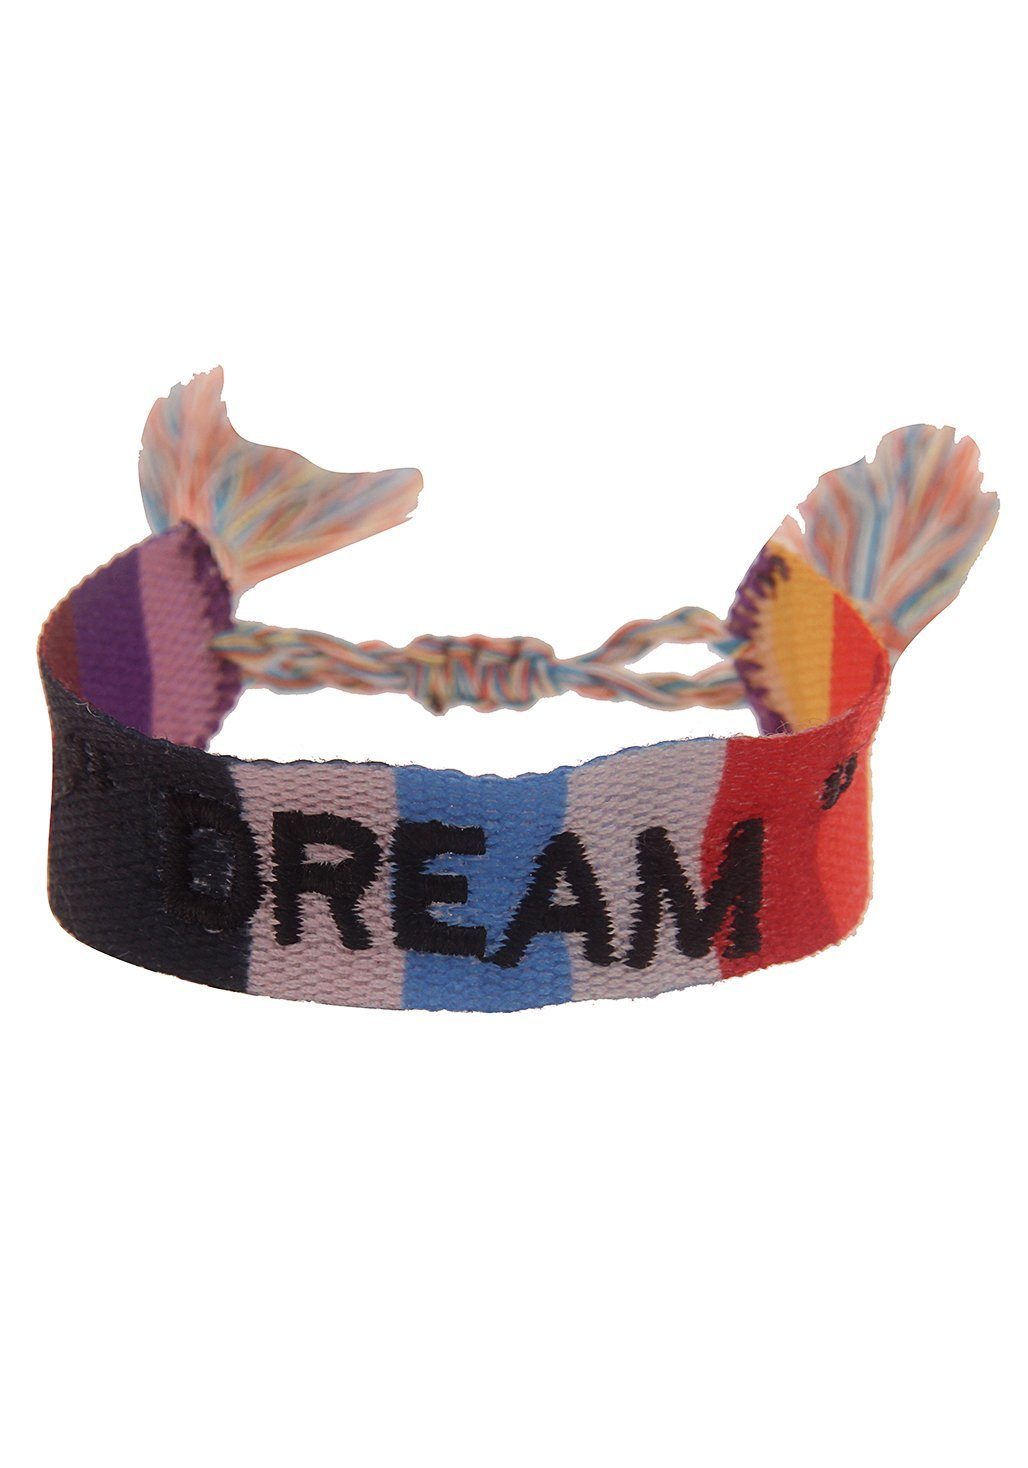 leslii armband dream, festival armband, 260120407 multicolor